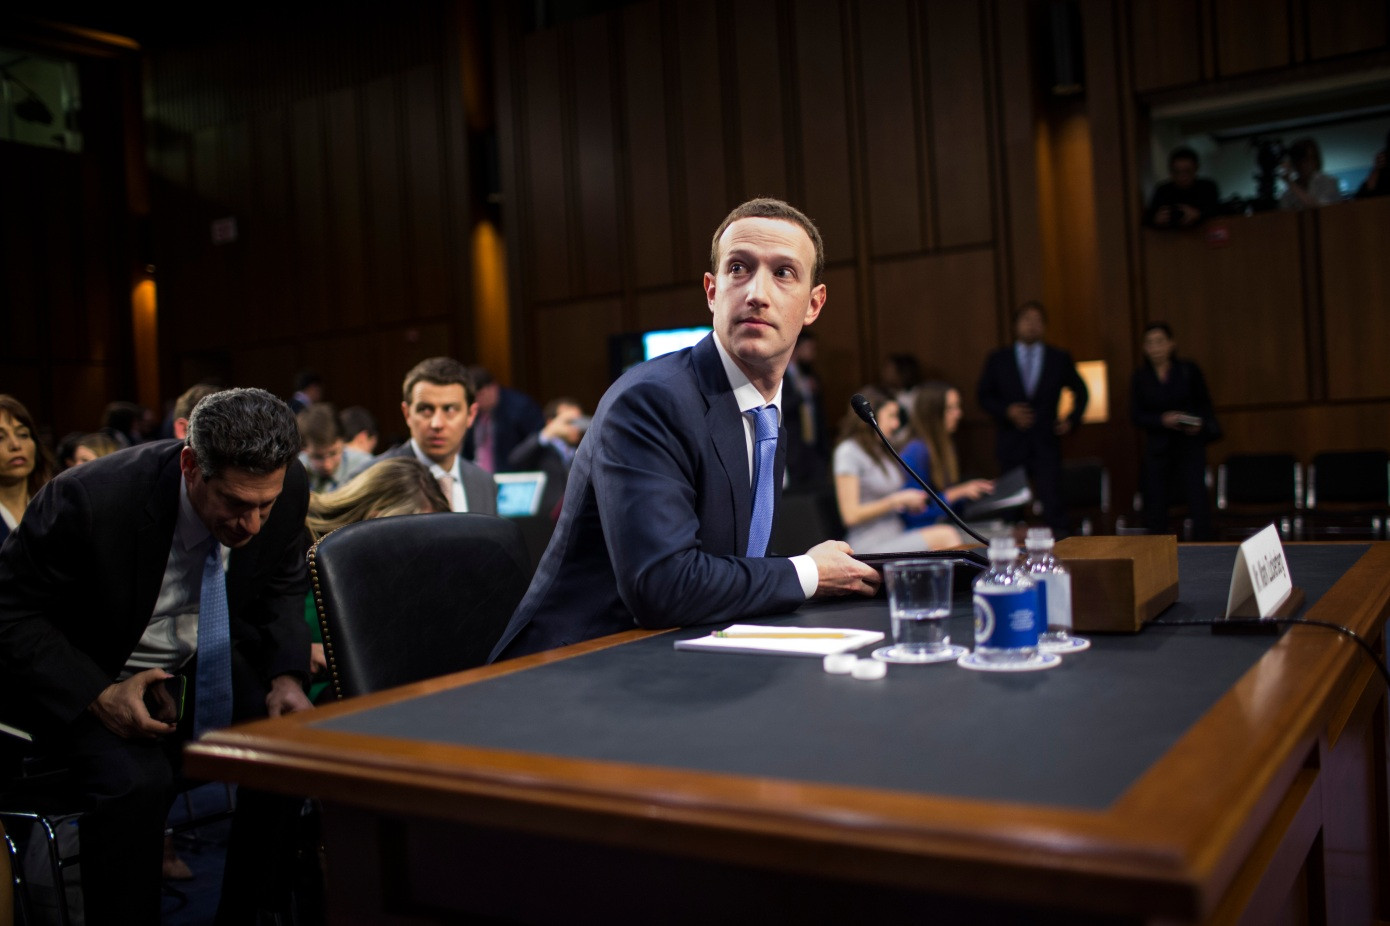 Đơn kiện bủa vây, Facebook chìm trong tâm bão chỉ trích, Mark Zuckerberg sắp phải hầu tòa? - Ảnh 2.